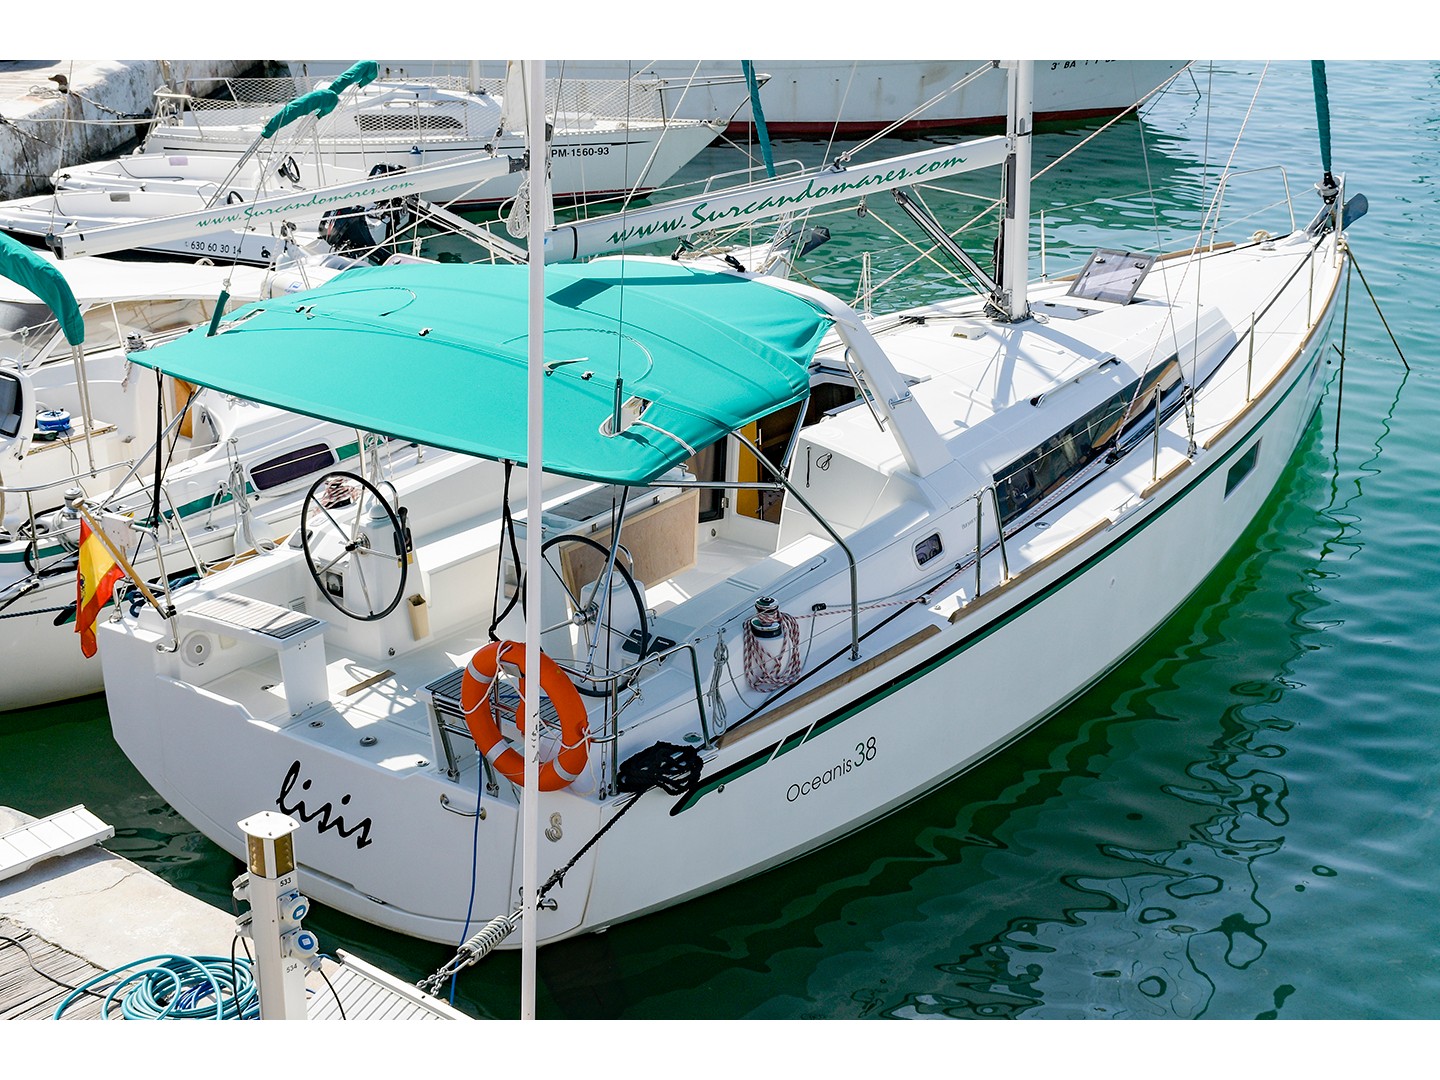 Yacht charter Oceanis 38 - 